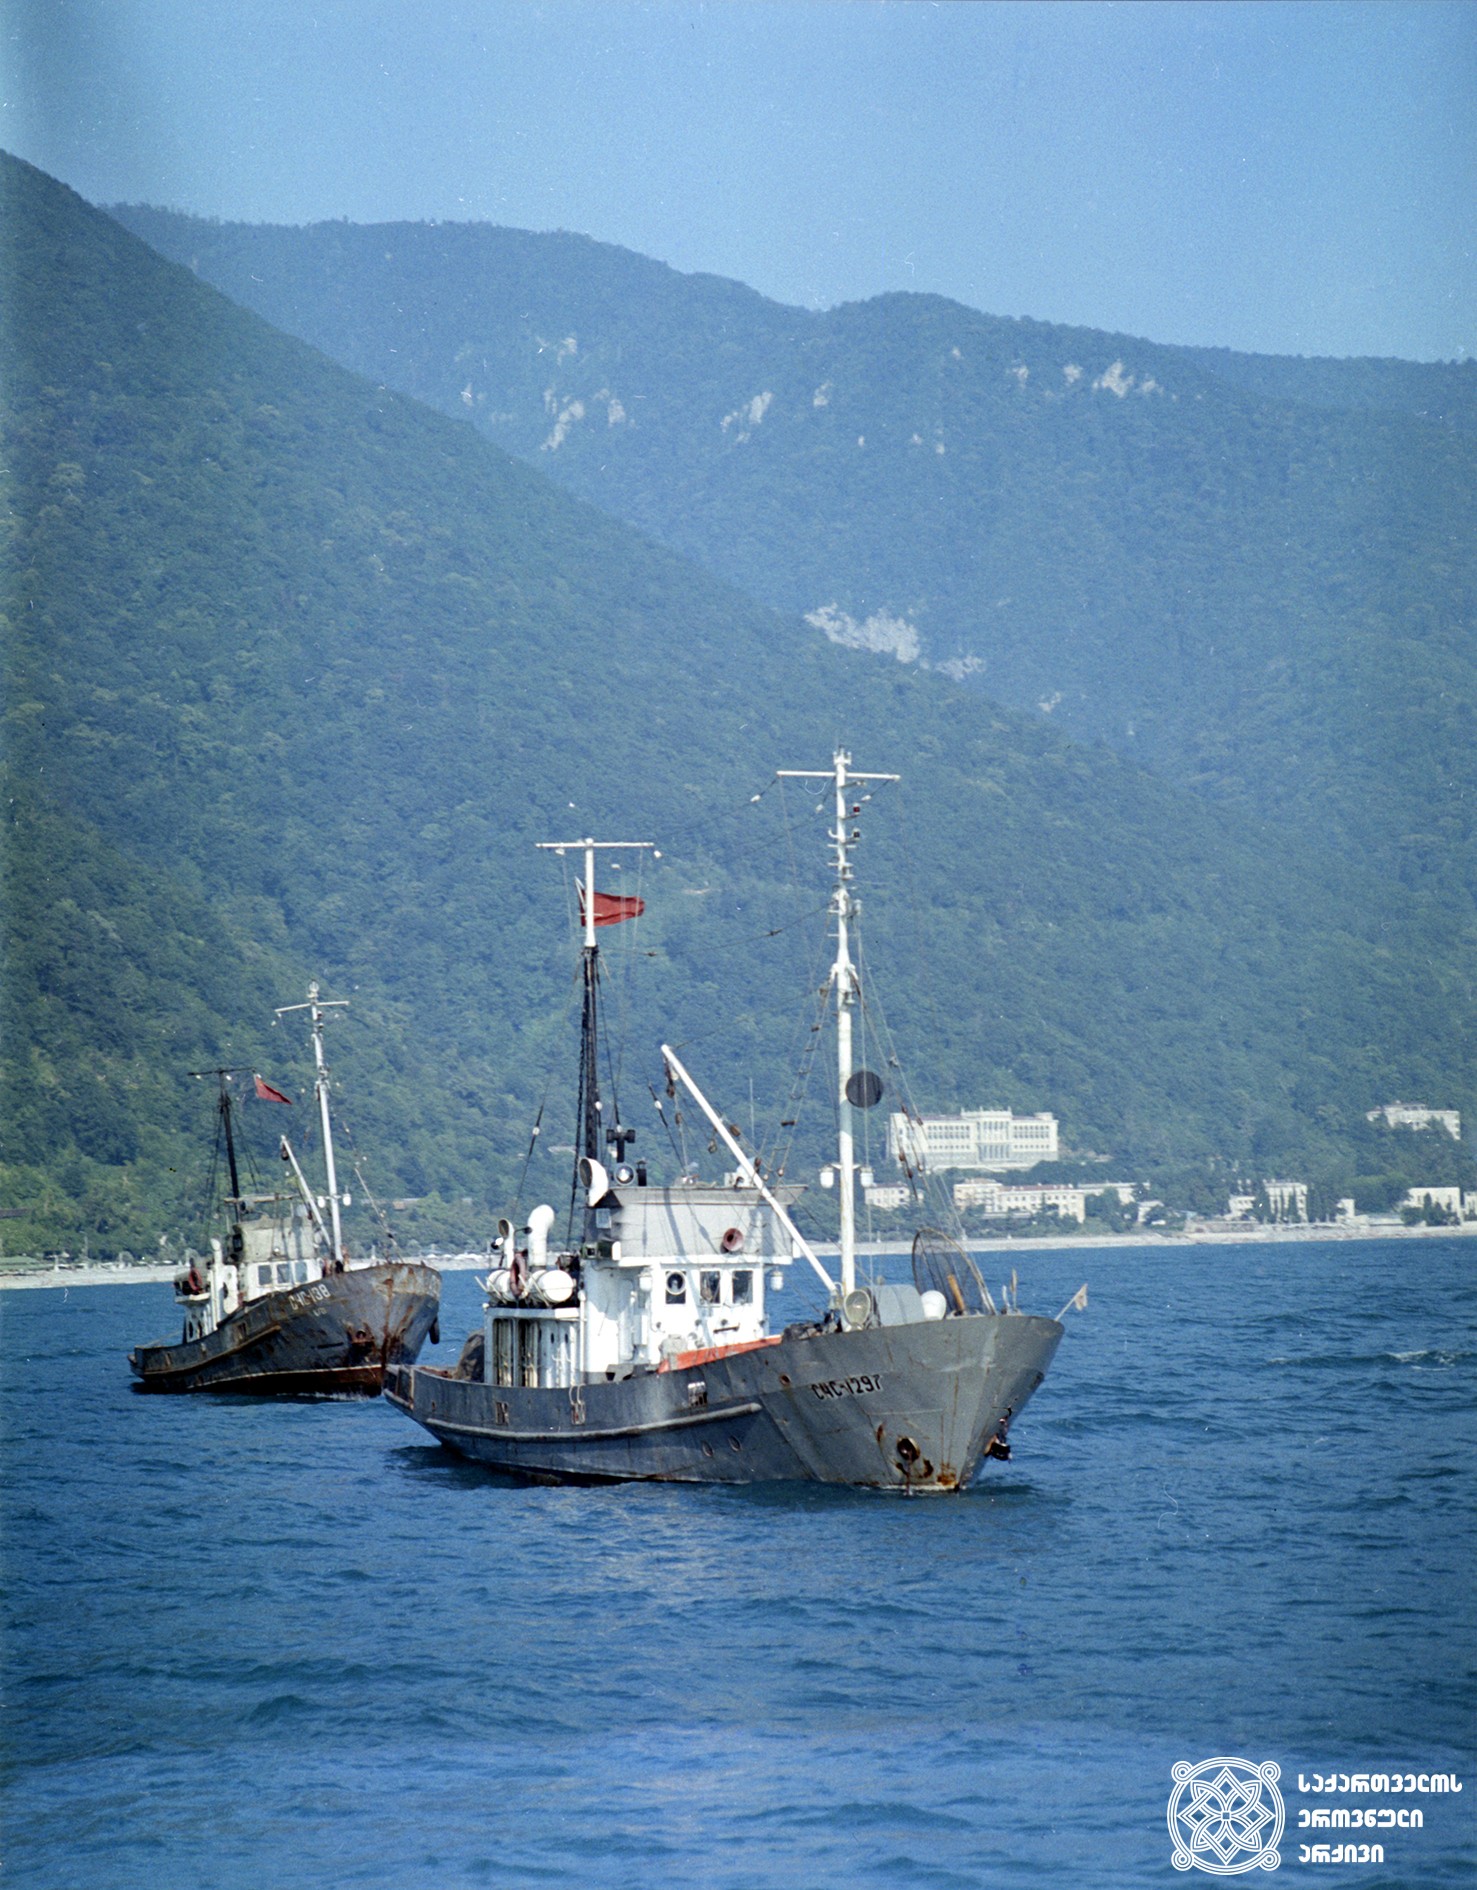 გაგრა, ხედი ზღვიდან. აფხაზეთი, 1973 წელი.
<br>
Gagra, view from the sea. Abkhazia, 1973.